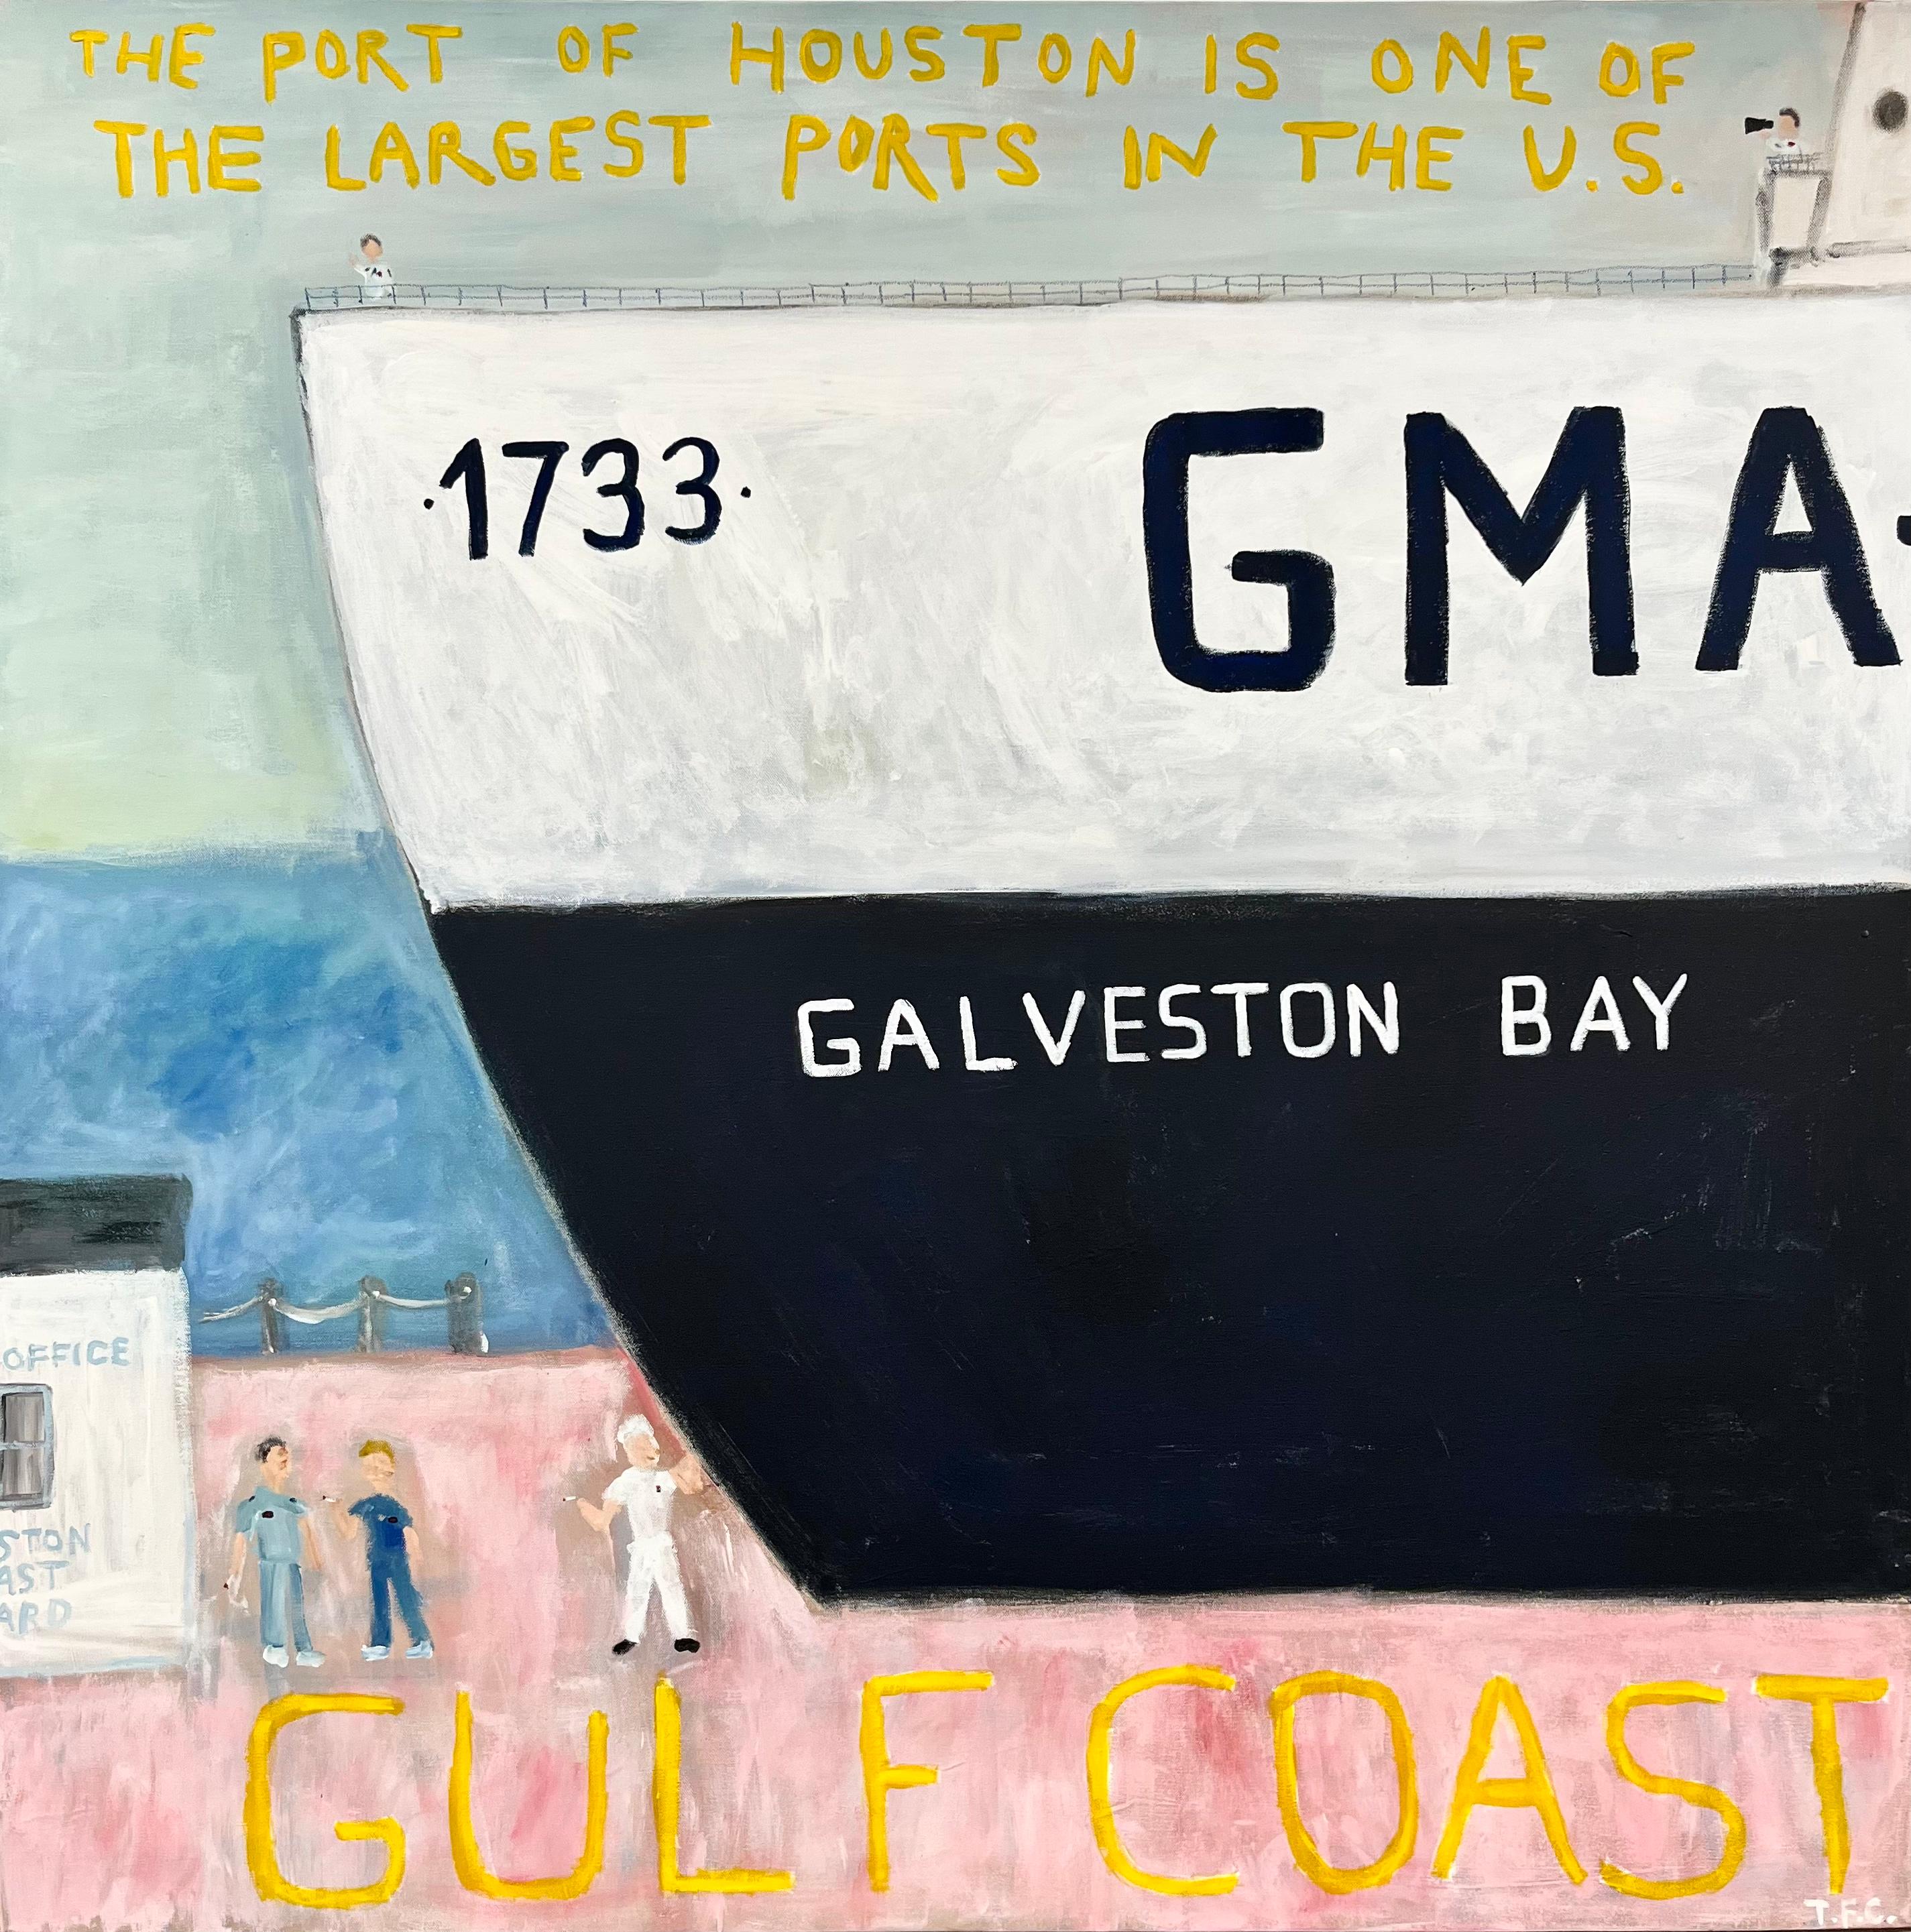 Tyler Casey Landscape Painting – "Golfküste" Zeitgenössische abstrakte Pop Art nautische Malerei der Galveston Bay